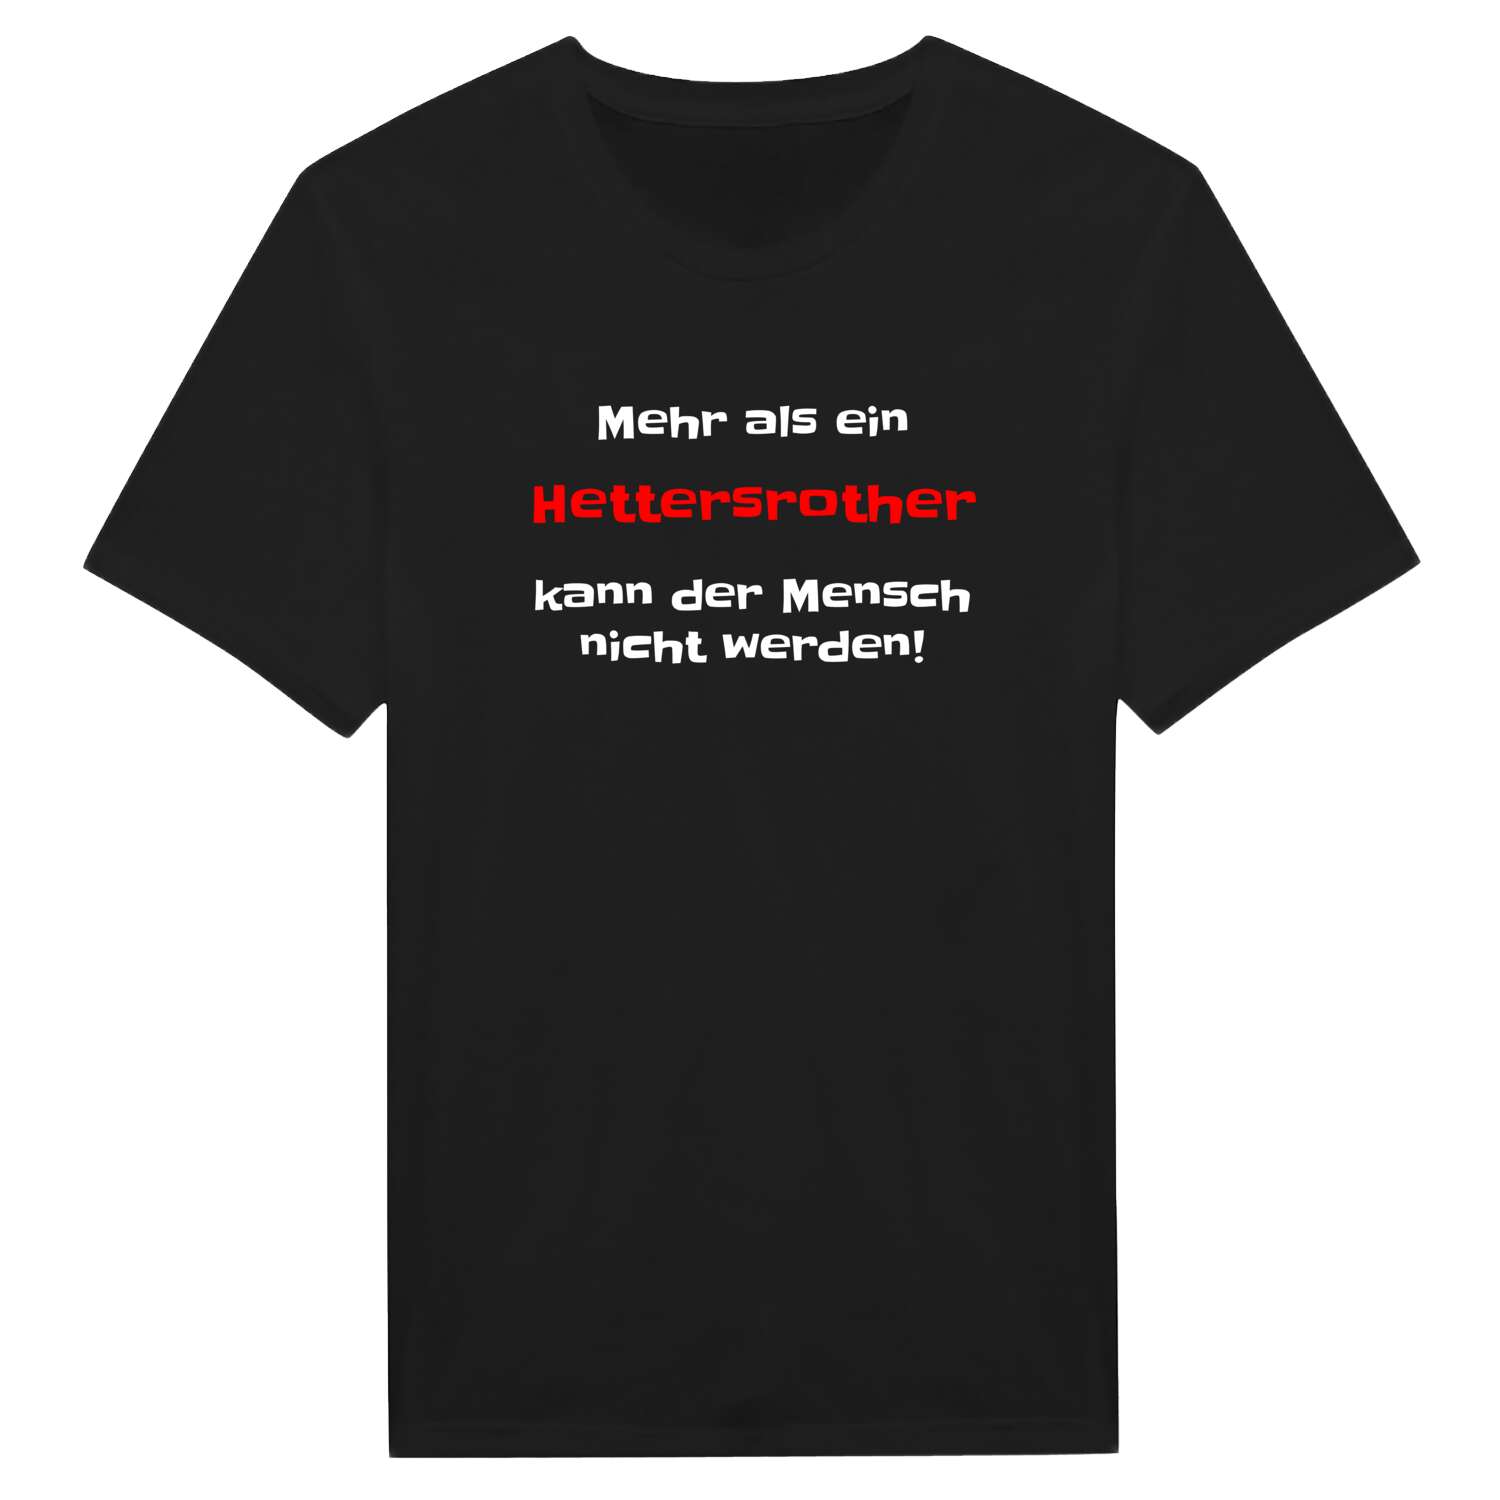 Hettersroth T-Shirt »Mehr als ein«